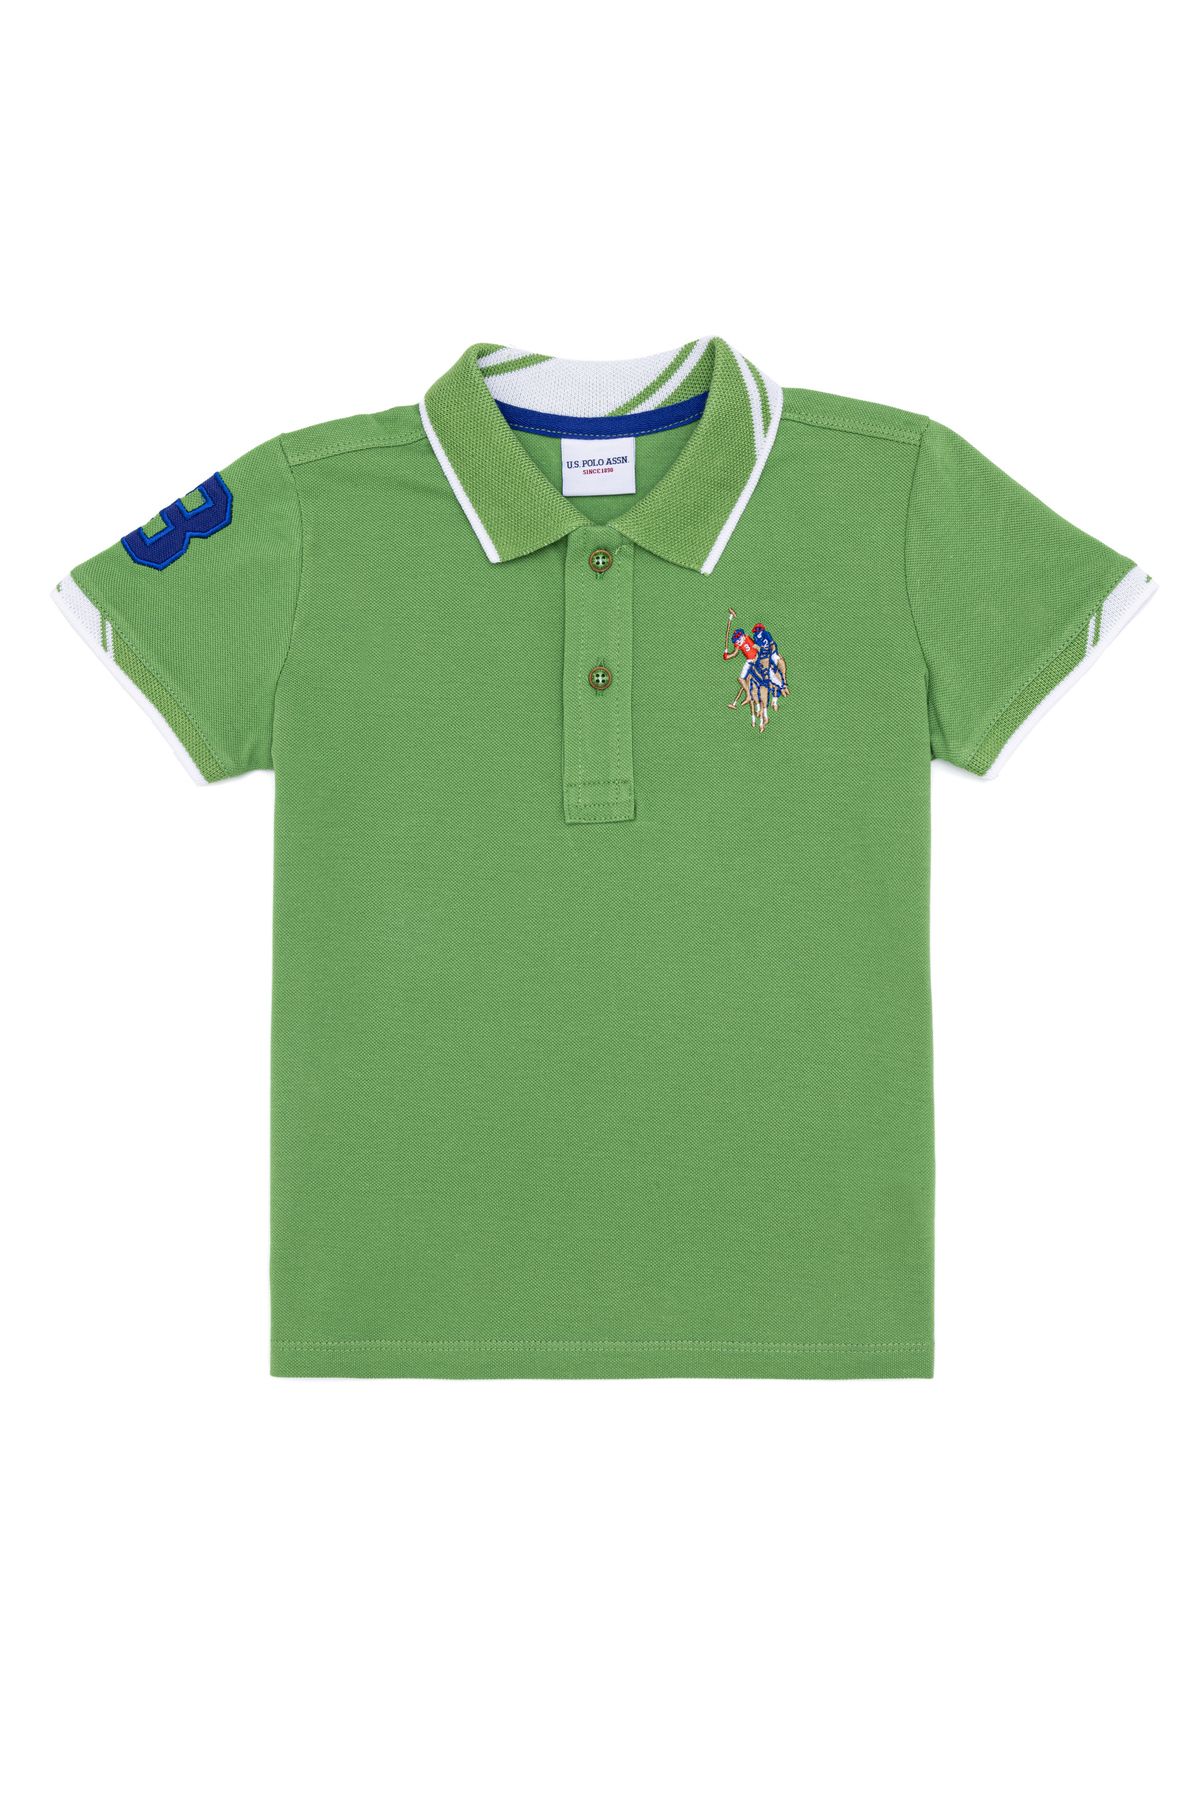 U.S. Polo Assn. tshirt